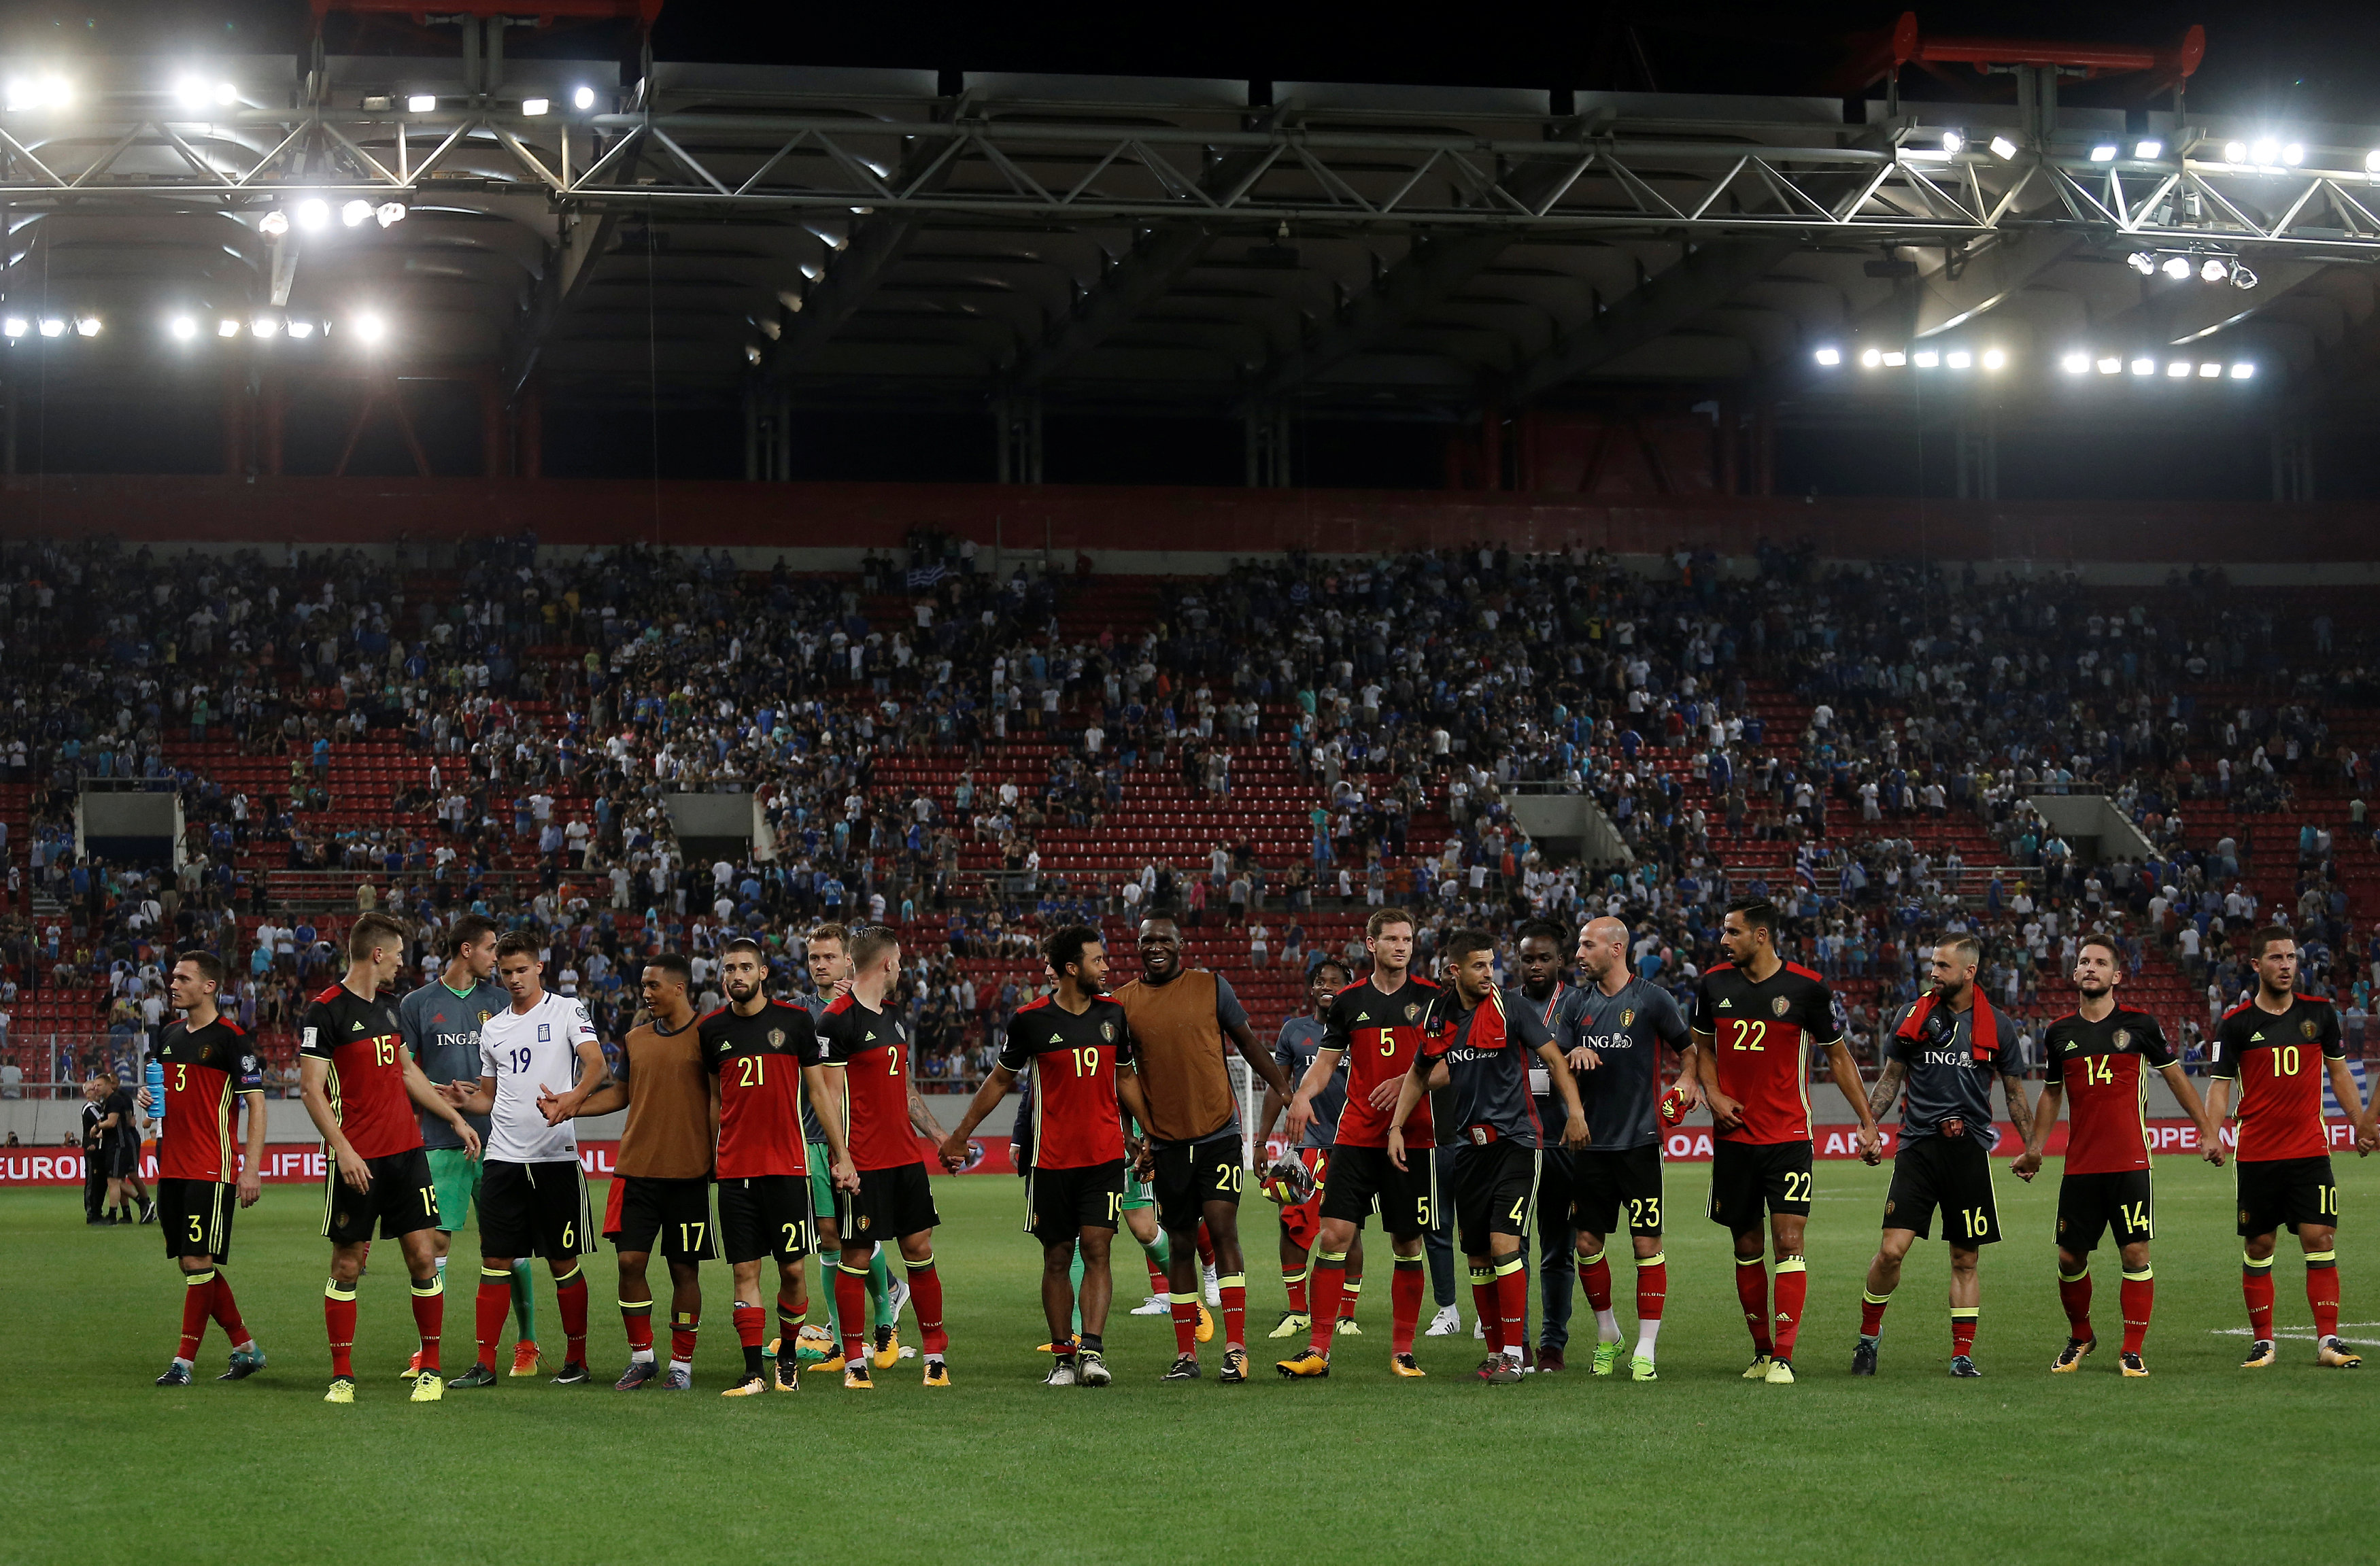 Bỉ trở thành đội bóng đầu tiên đoạt vé dự World Cup 2018. Ảnh: REUTERS